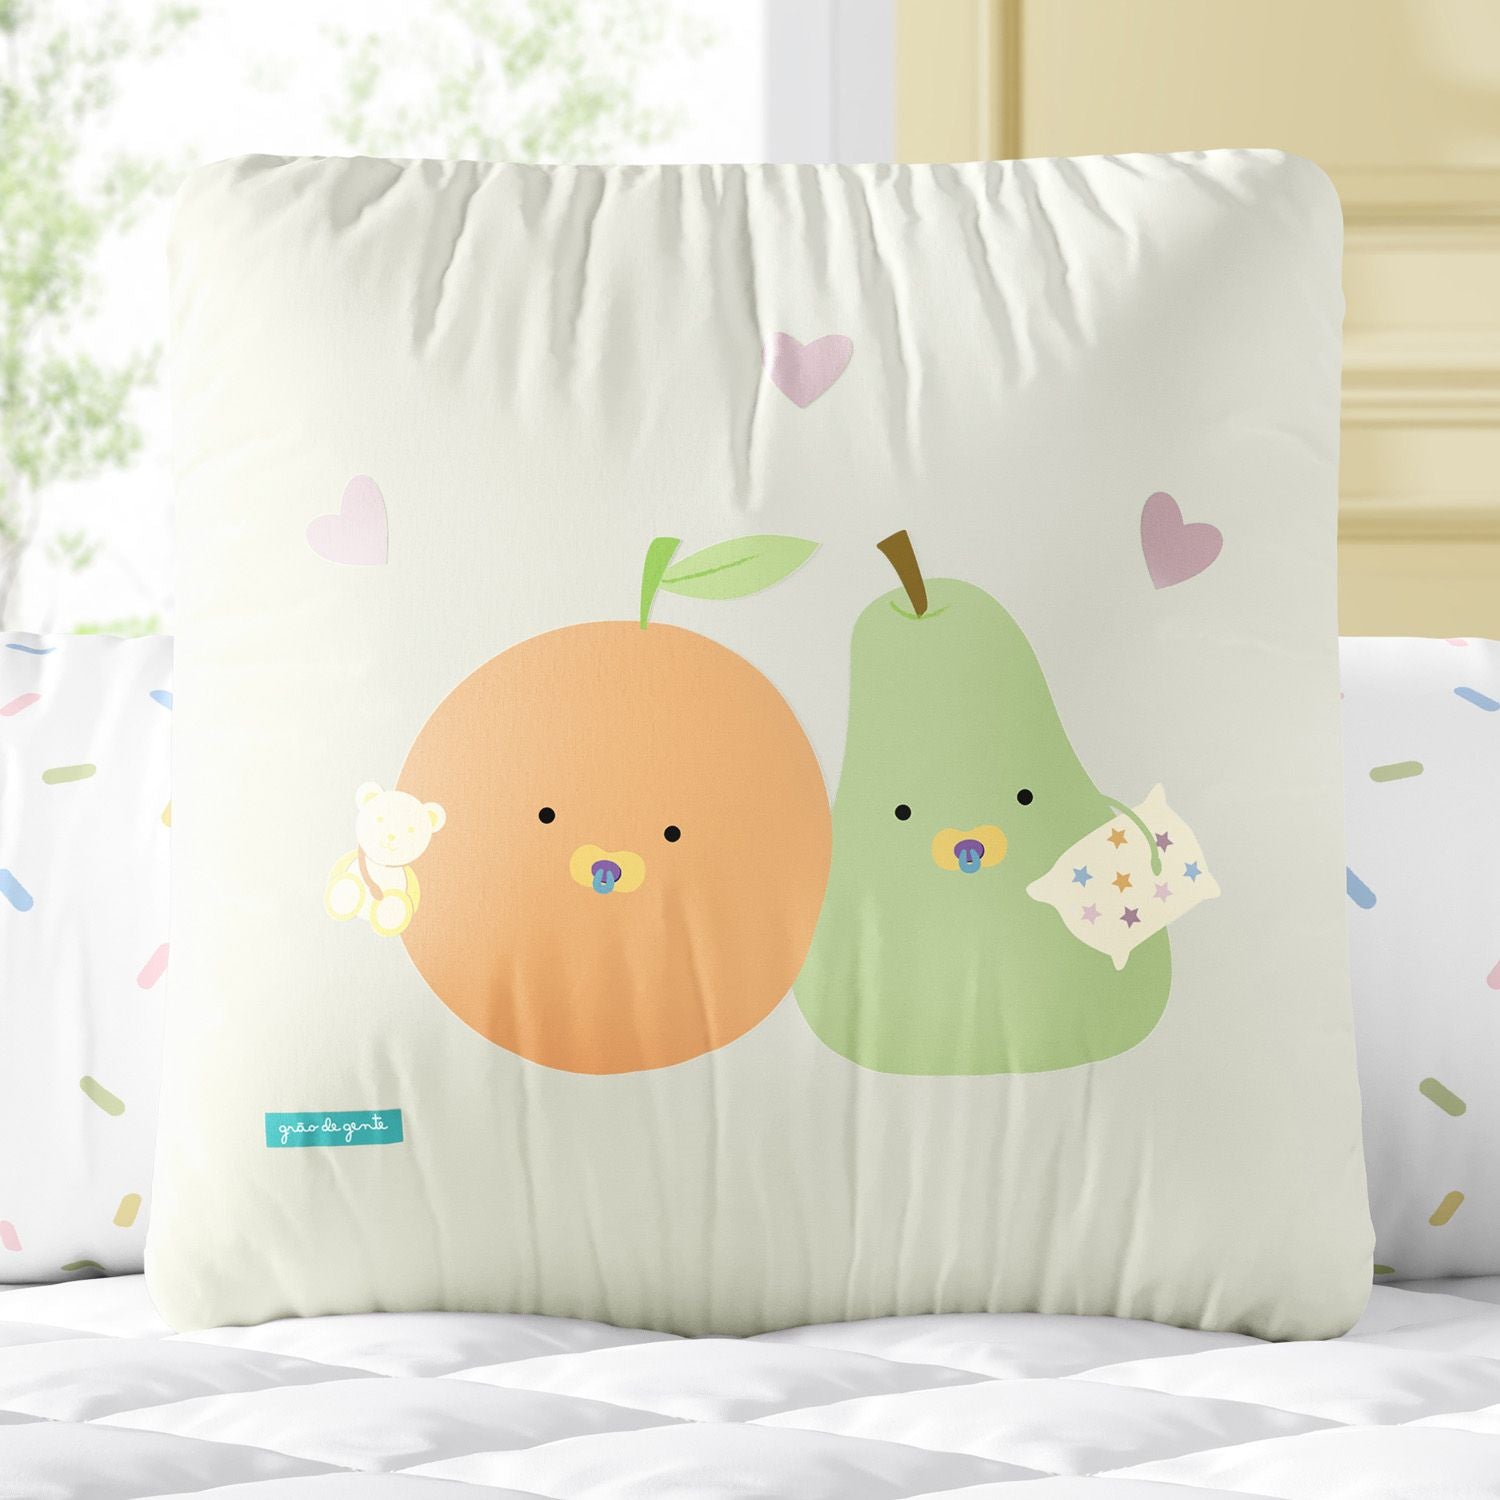 Pear and Orange Fruits Square Cushion 11.8